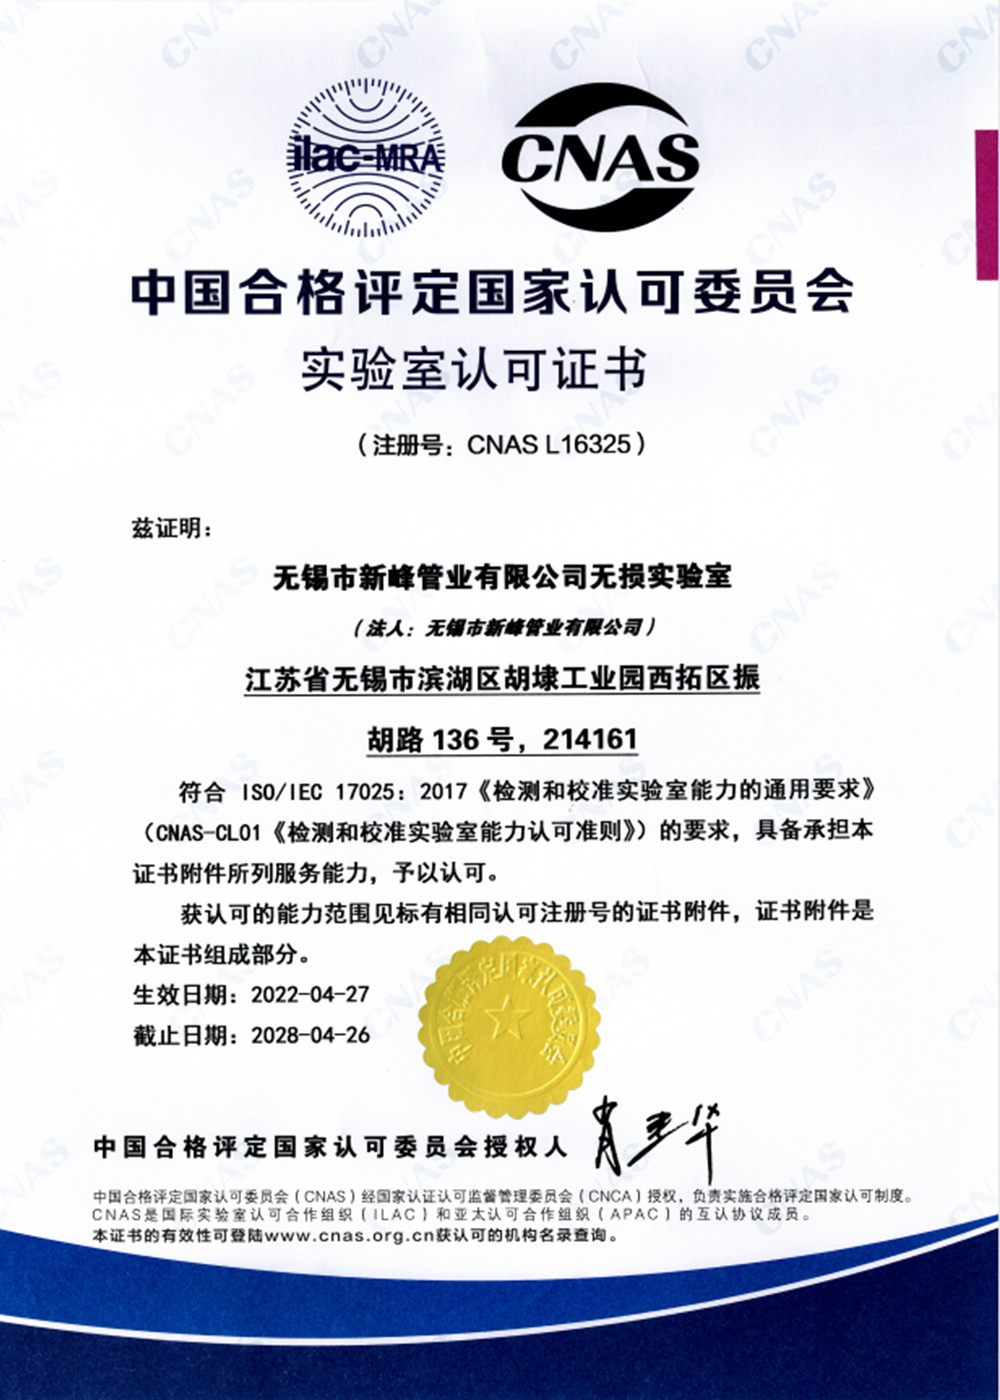 Certificat d'accréditation de laboratoire CNAS